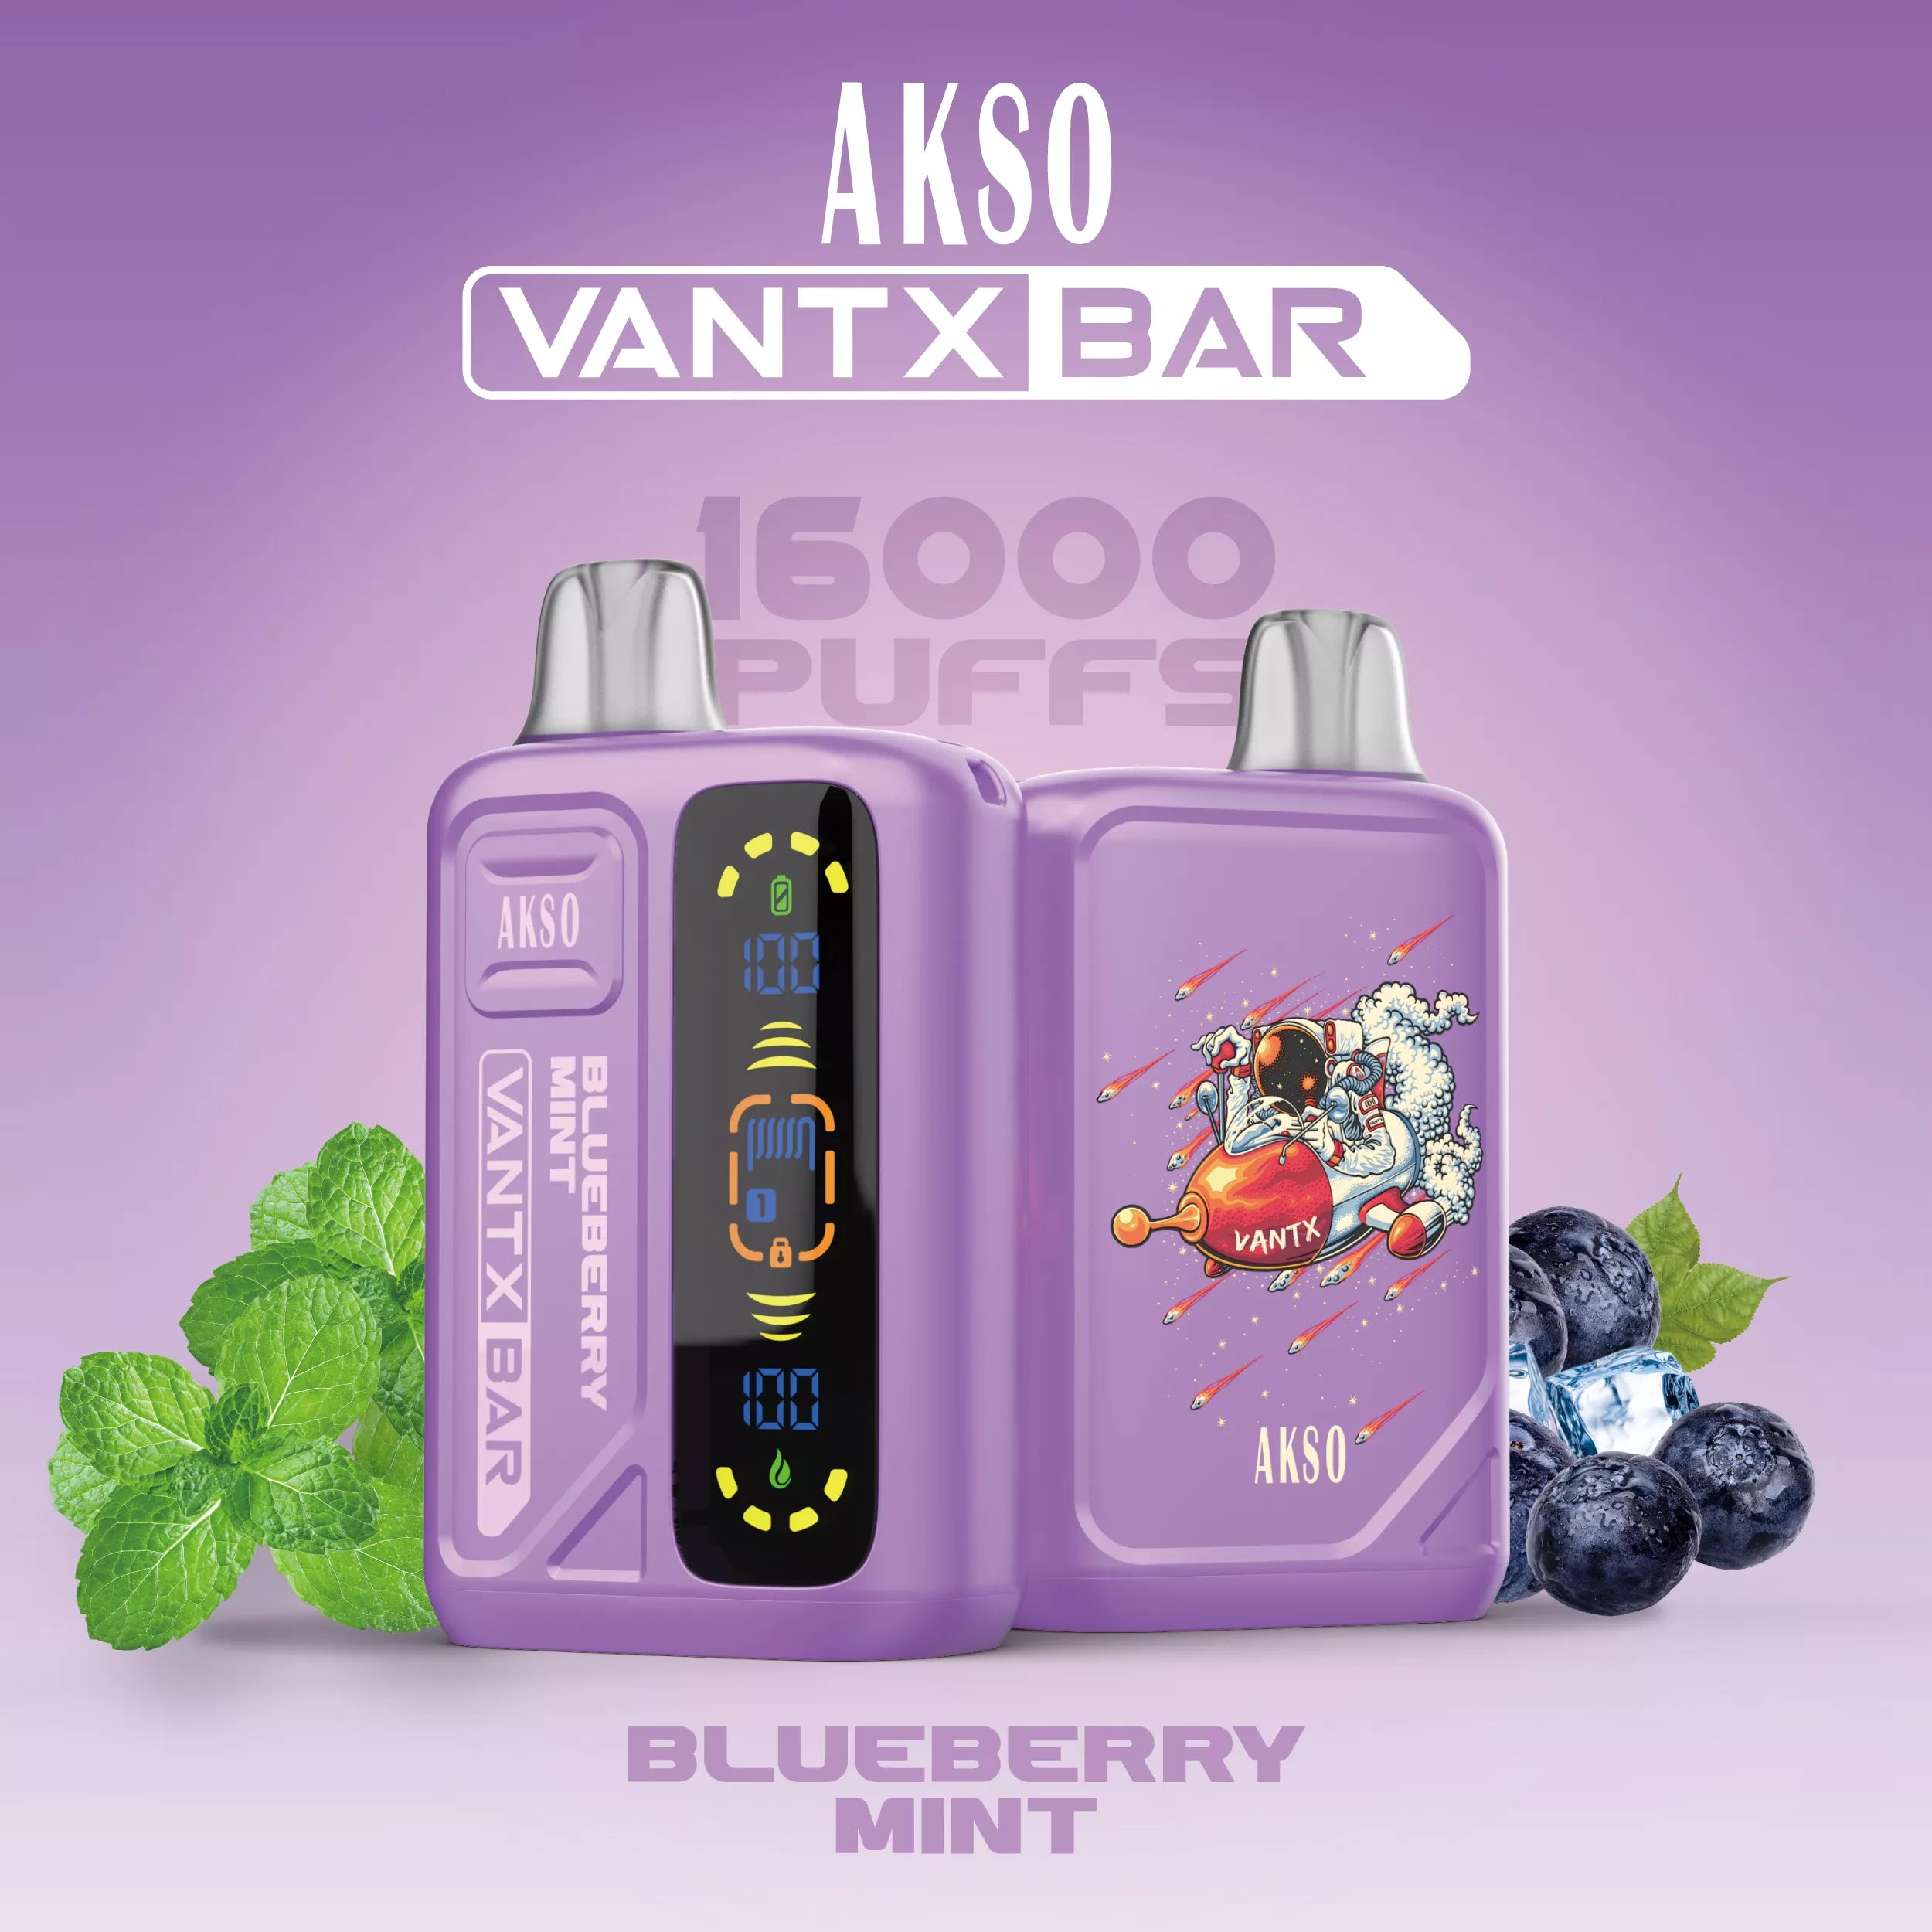 HCigar AKSO VANTX 16000 Puffs Disposable Vape Wholesale - Vapz Vape Wholesale